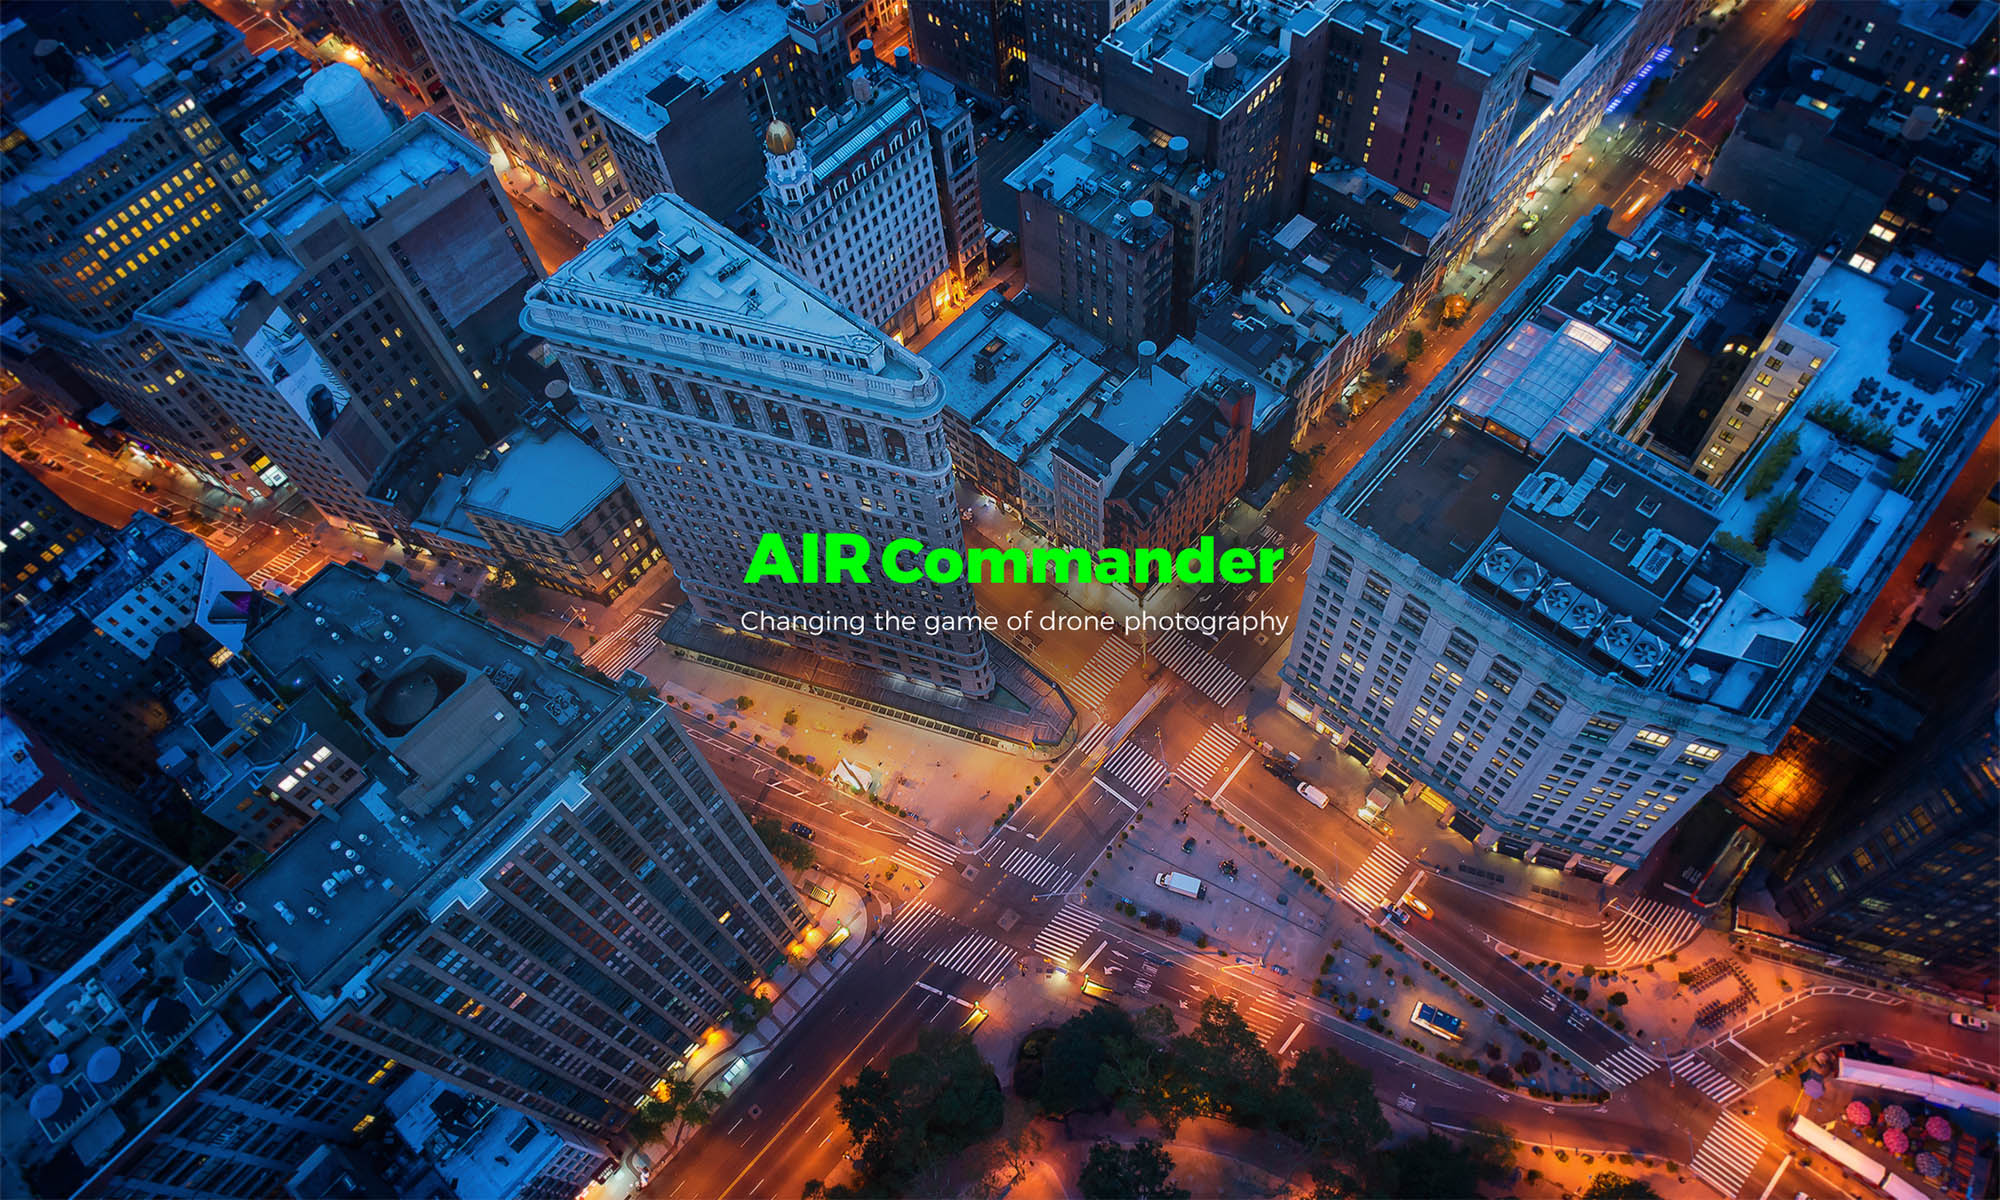 AIR Commander v2 - remote controller for Sony cameras